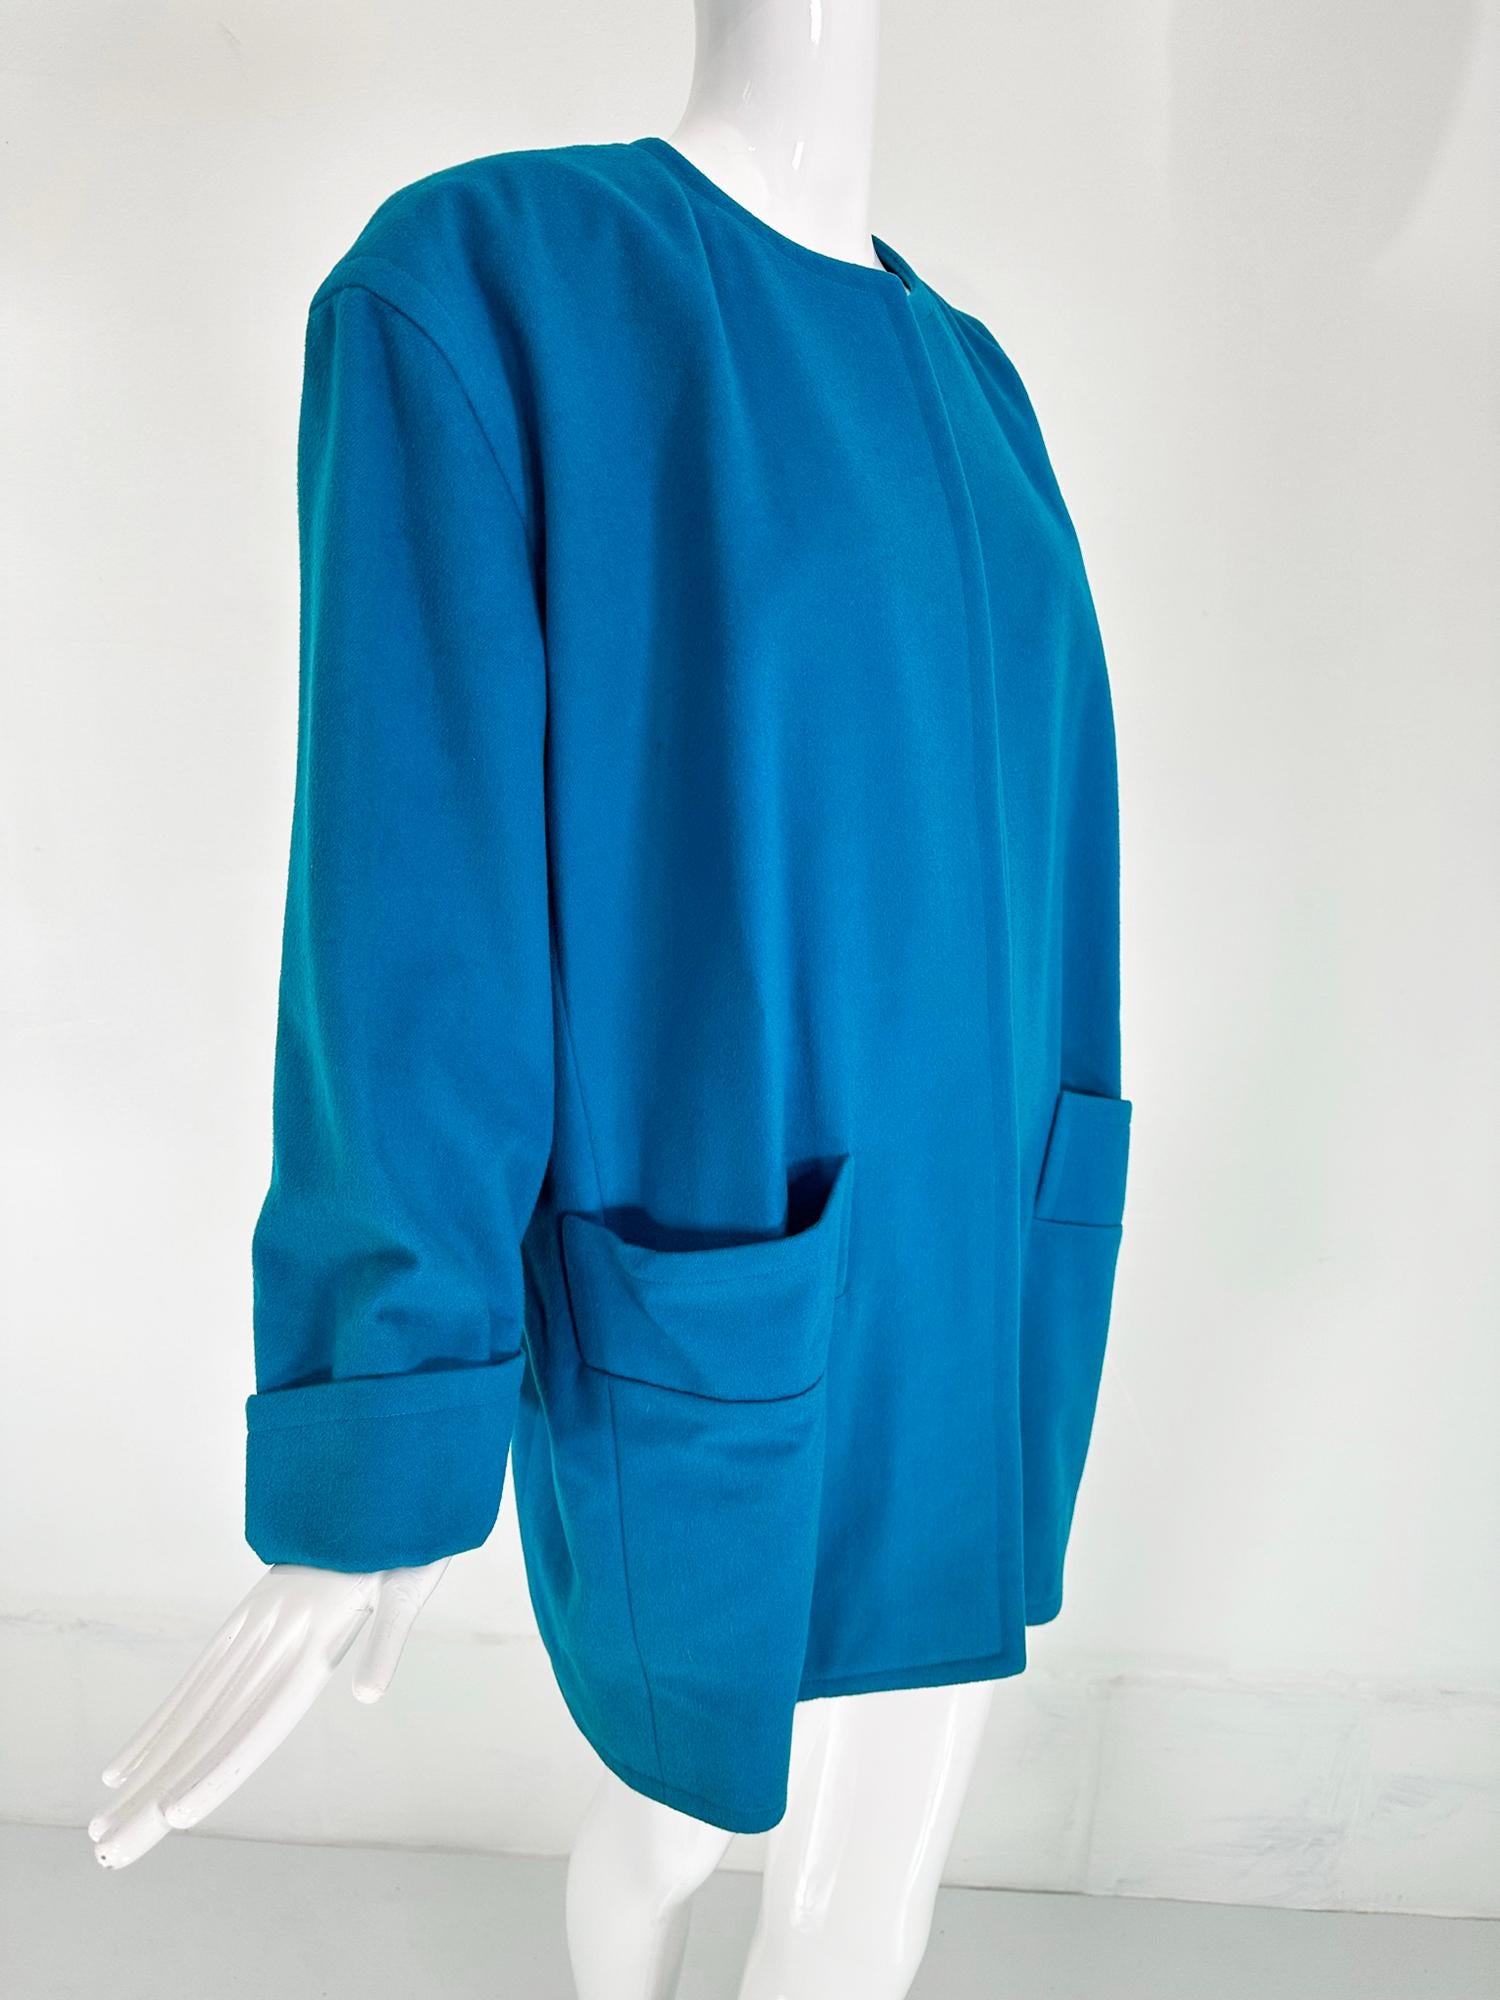 Manteau swing en laine turquoise de Givenchy, ouvert sur le devant et doté de poches en biais à l'avant, datant des années 1980. Le manteau à col rond est ouvert à l'avant, les épaules sont tombantes et l'on peut y voir de l'eau.  manches longues et